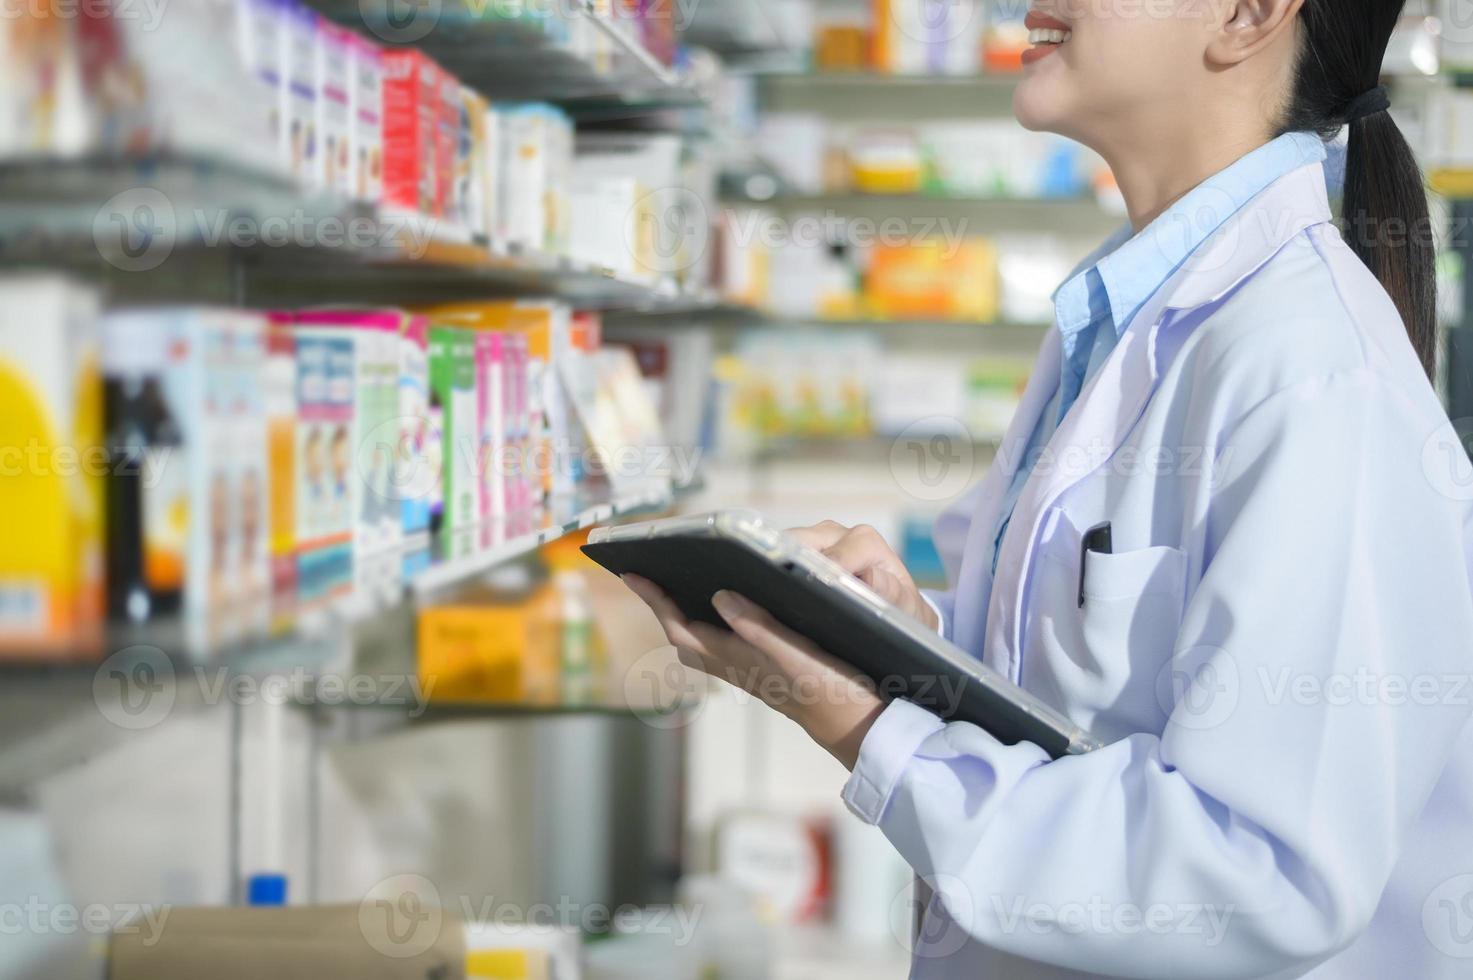 portrait d'une pharmacienne à l'aide d'une tablette dans une pharmacie de pharmacie moderne. photo